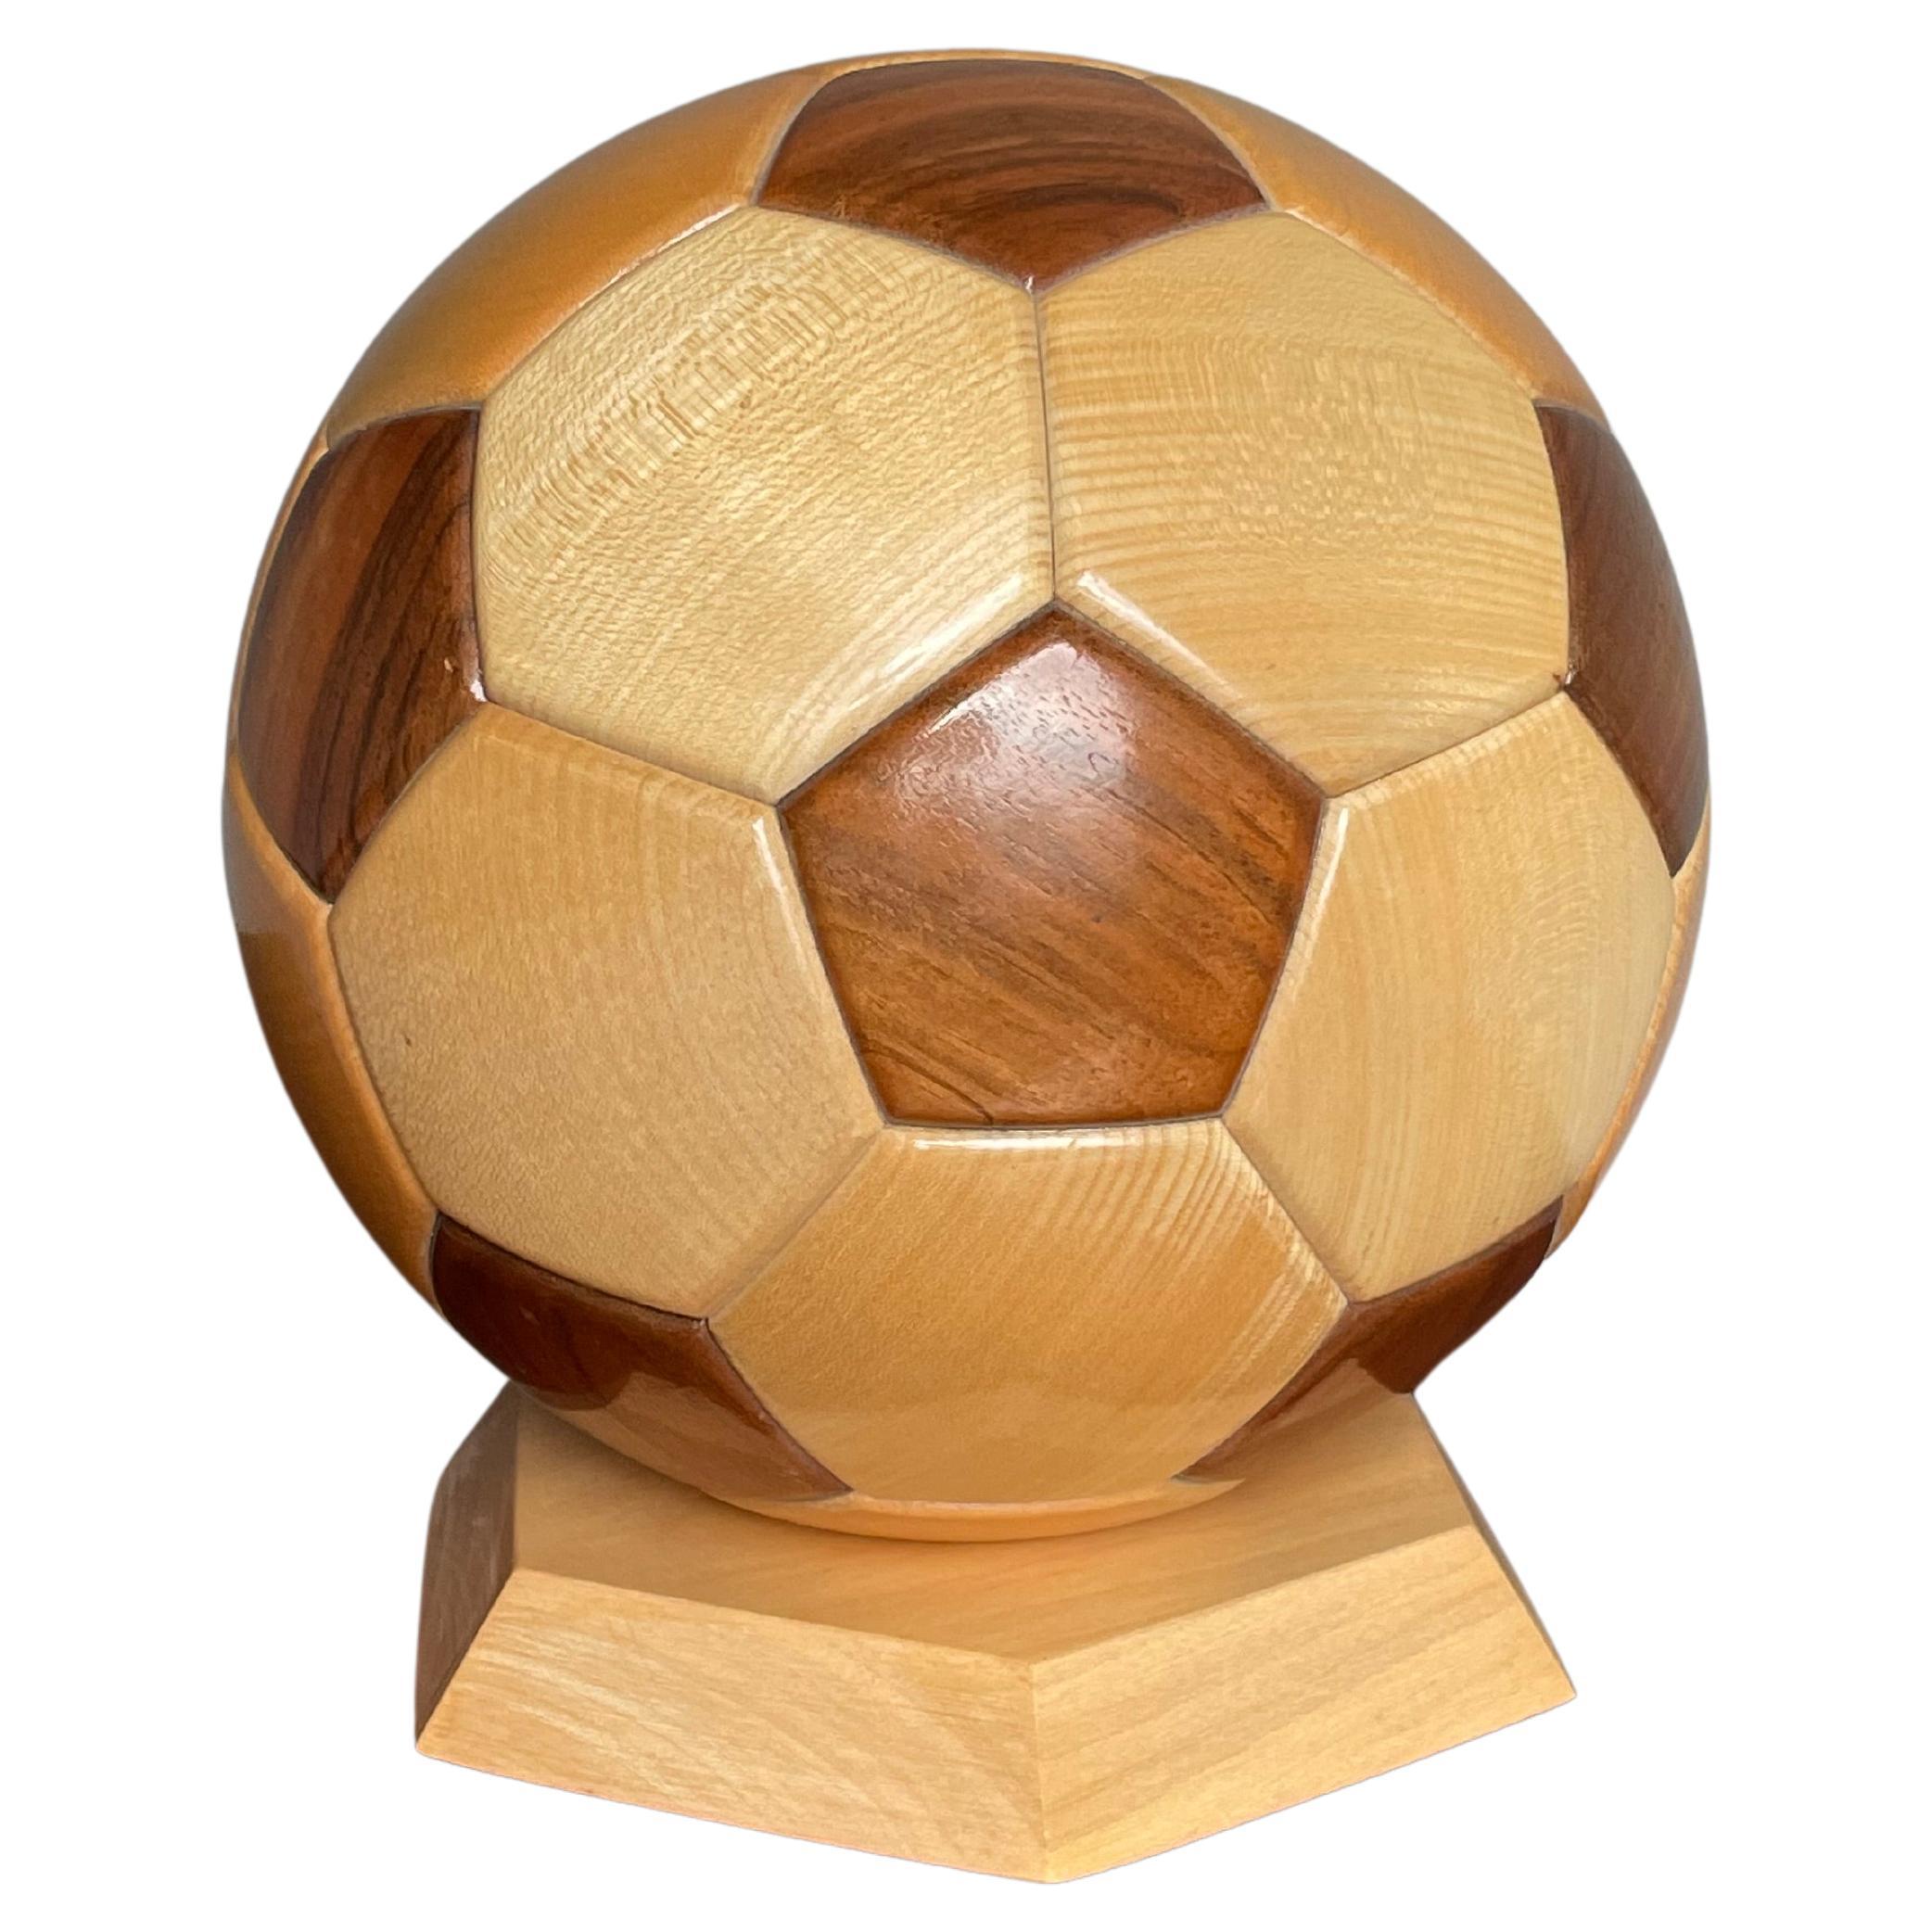 All Handmade Vintage 1980s Wooden Soccer Ball / Football Sculpture / Desk Piece